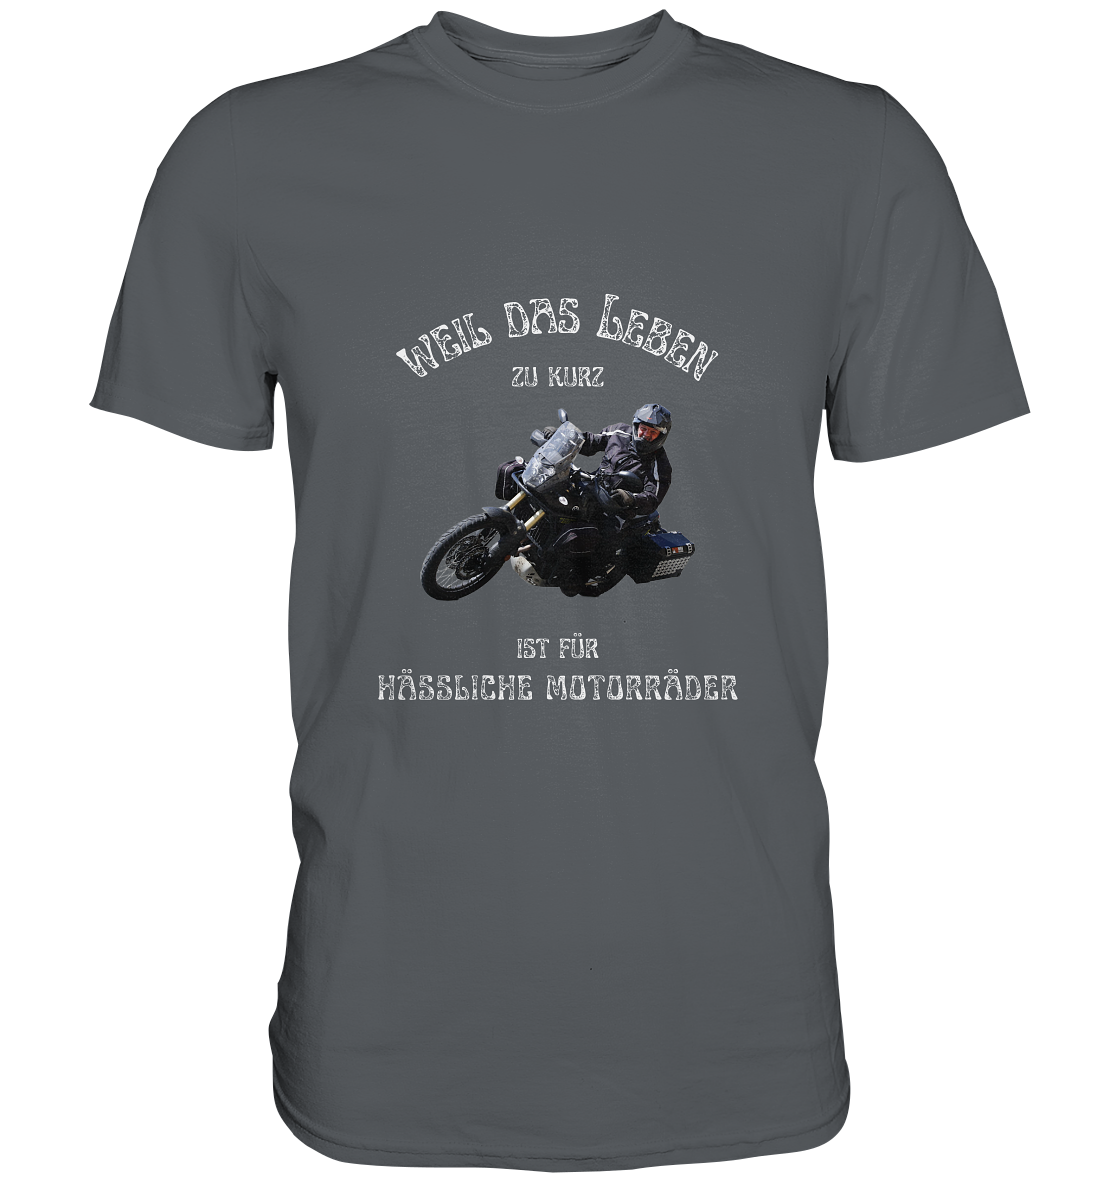 "Weil das Leben zu kurz ist für hässliche Motorräder" _ für Bernd Degwer | individualisiertes Herren-Shirt mit Foto und Motorradspruch in hellem Design